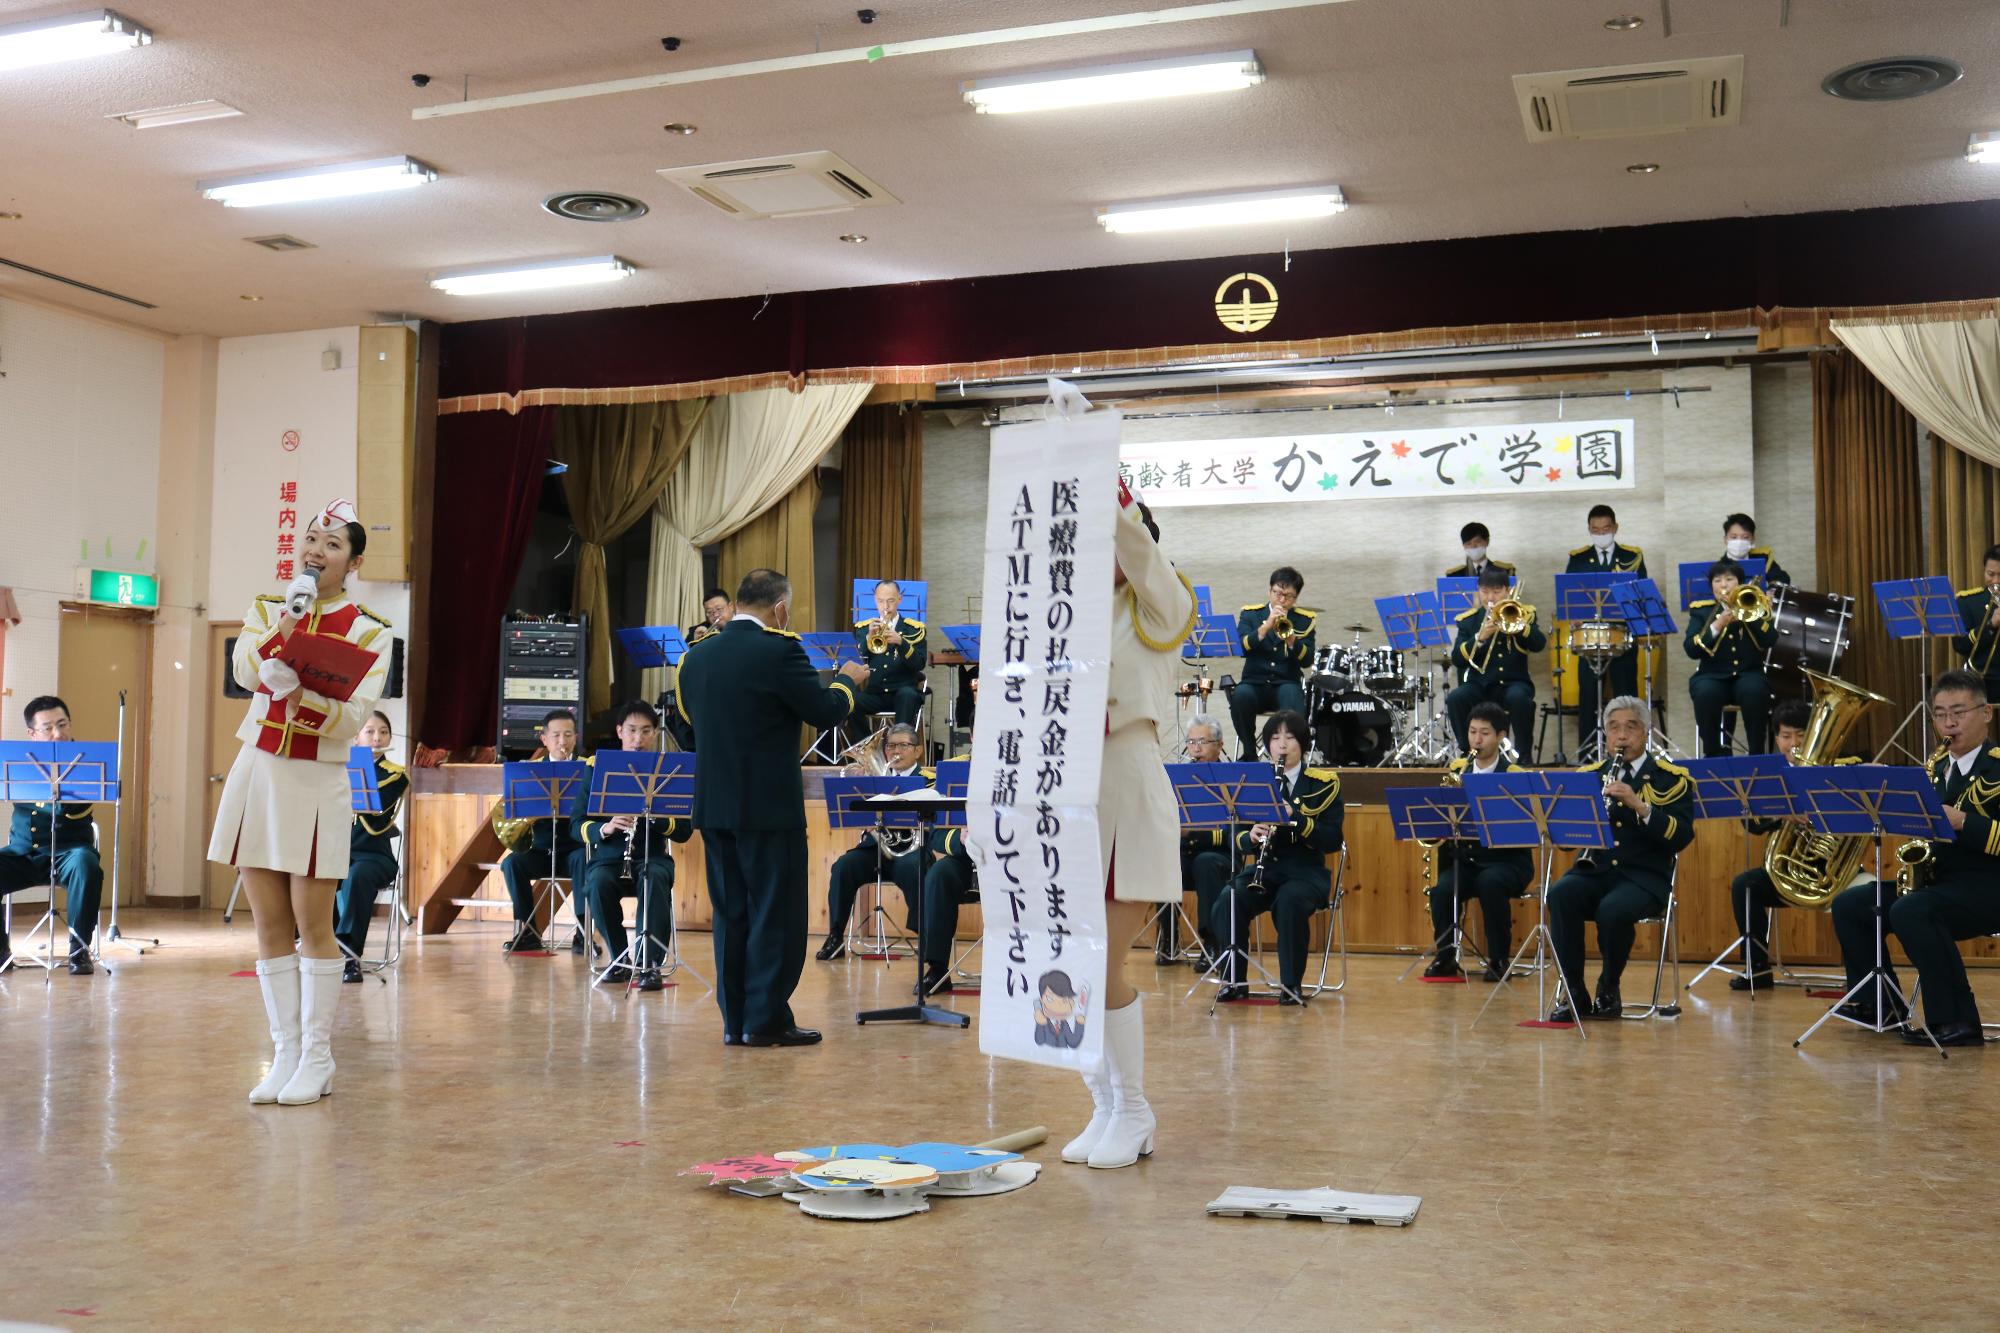 兵庫県警察音楽隊が演奏と歌で詐欺被害の手口を伝えている写真